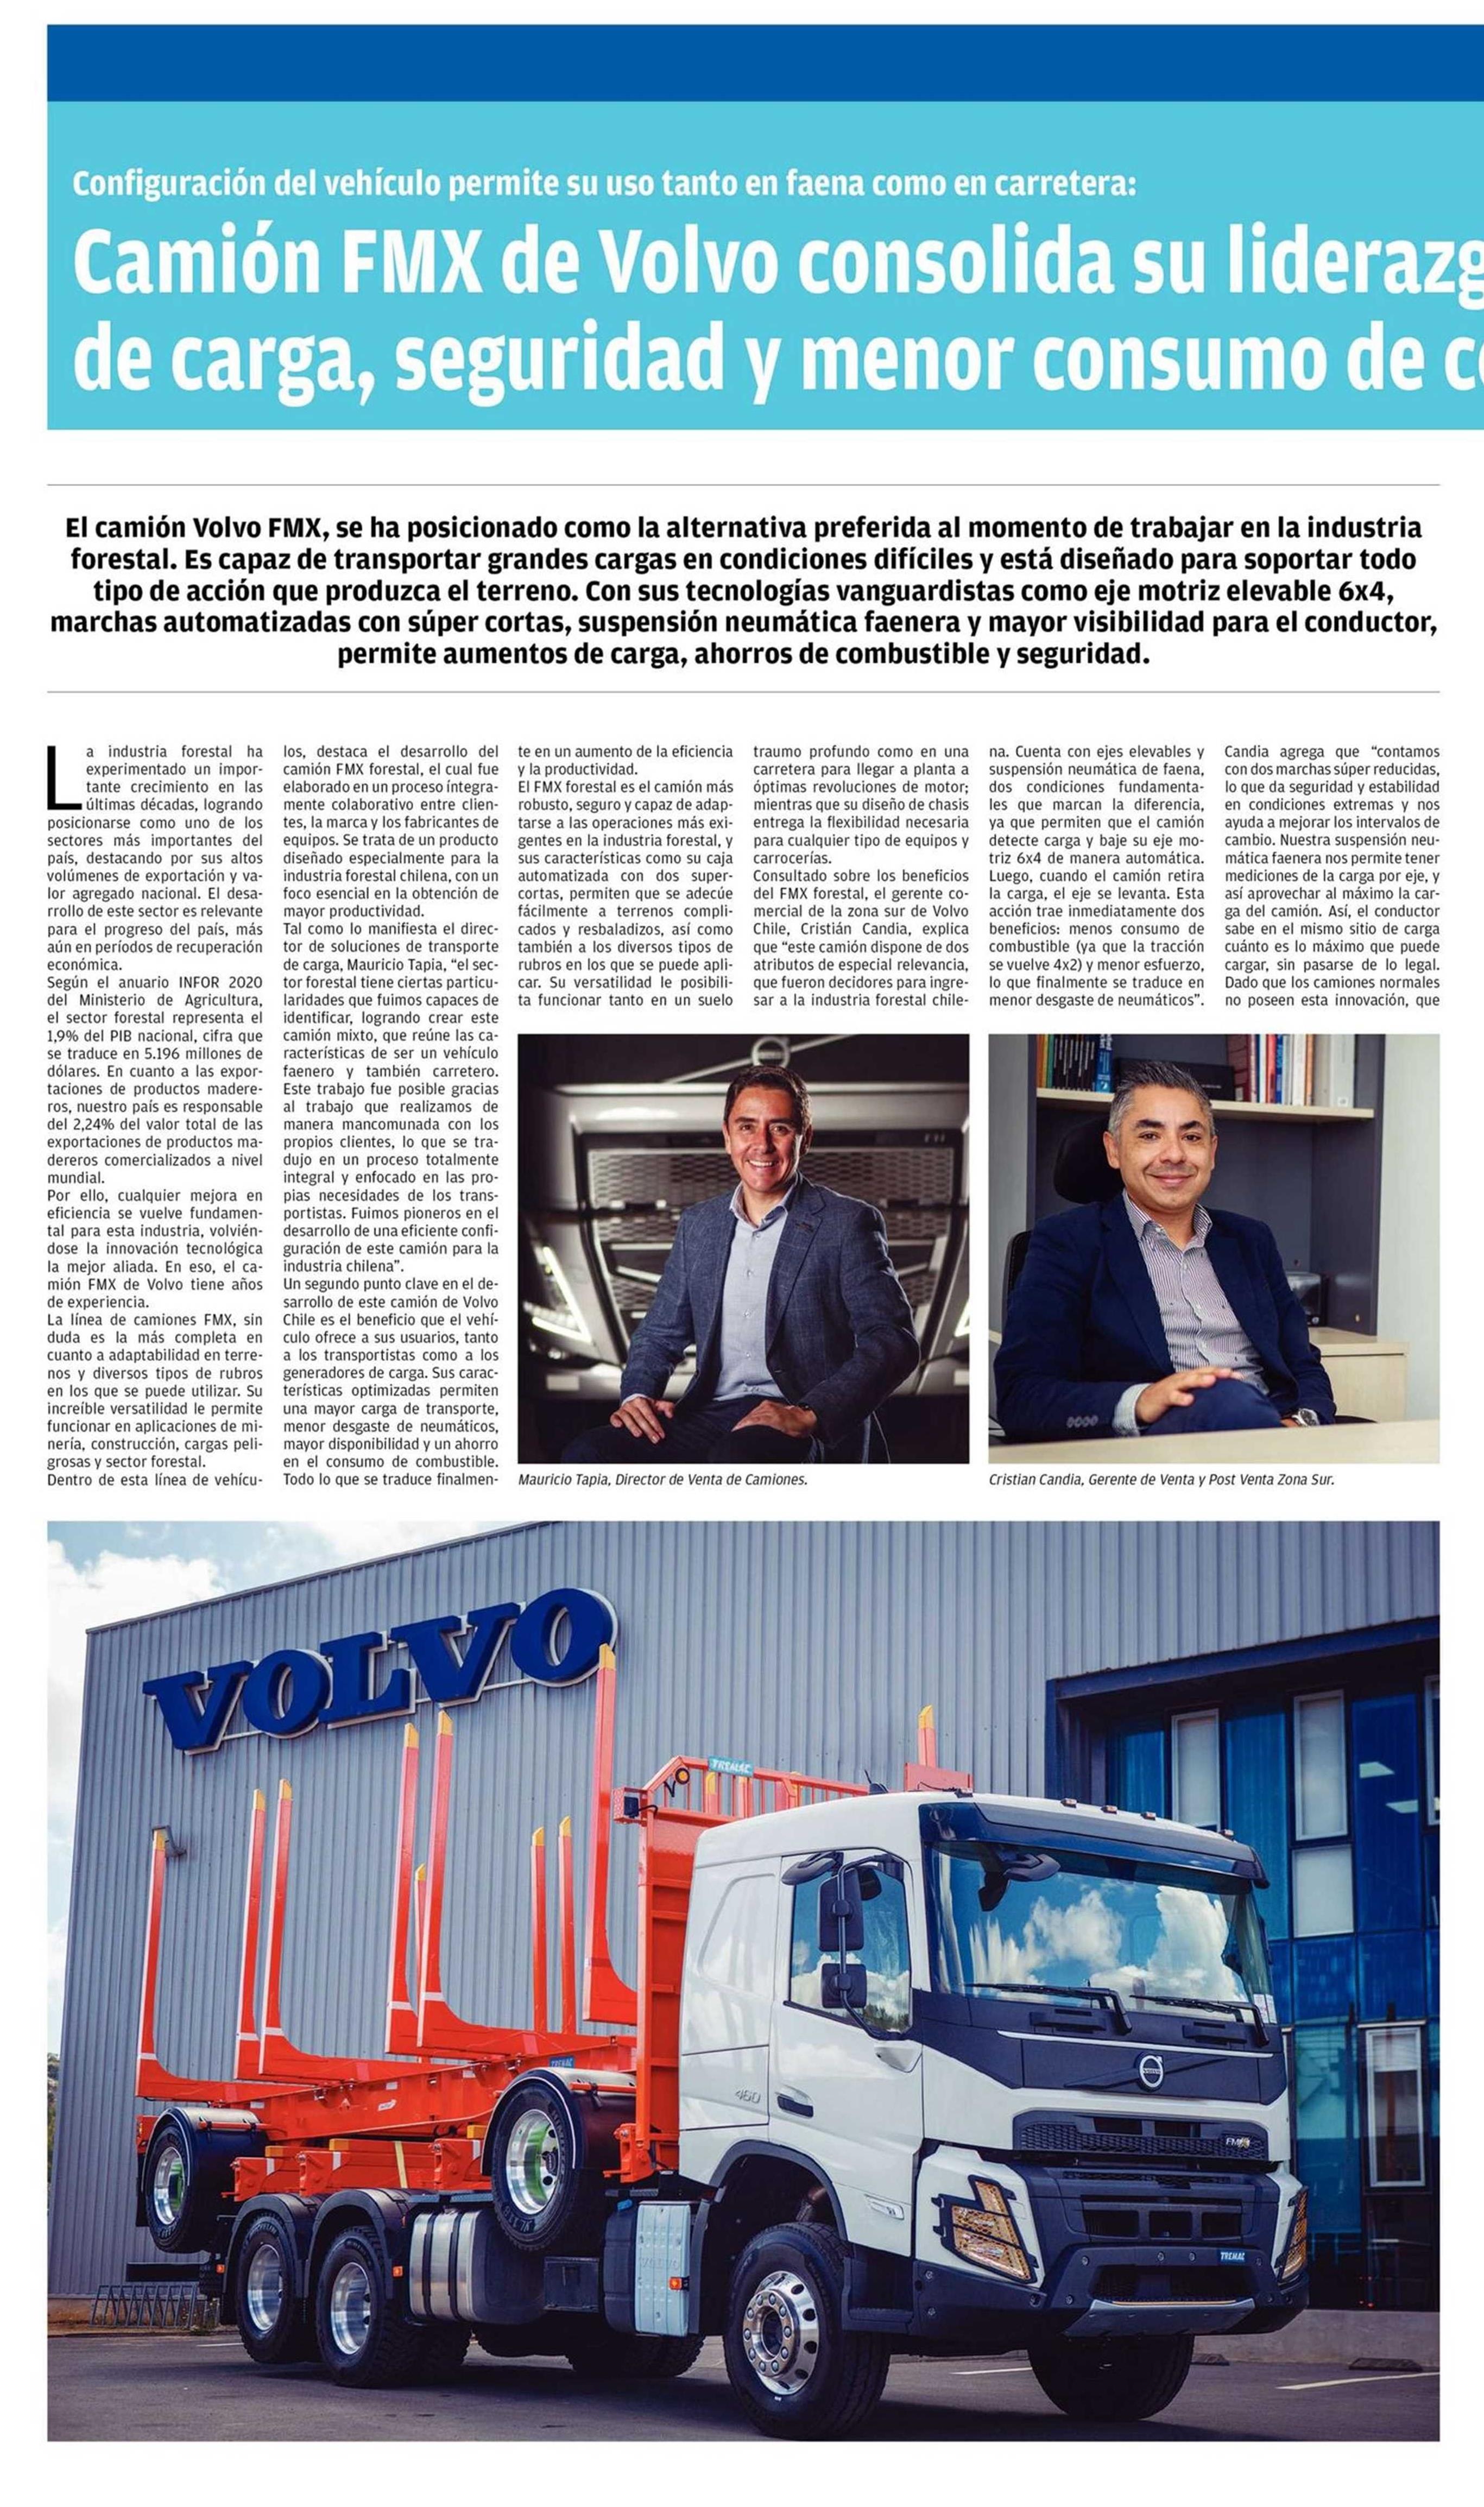 El FMX MAX cuenta con nuevos ejes - Volvo Group Peru